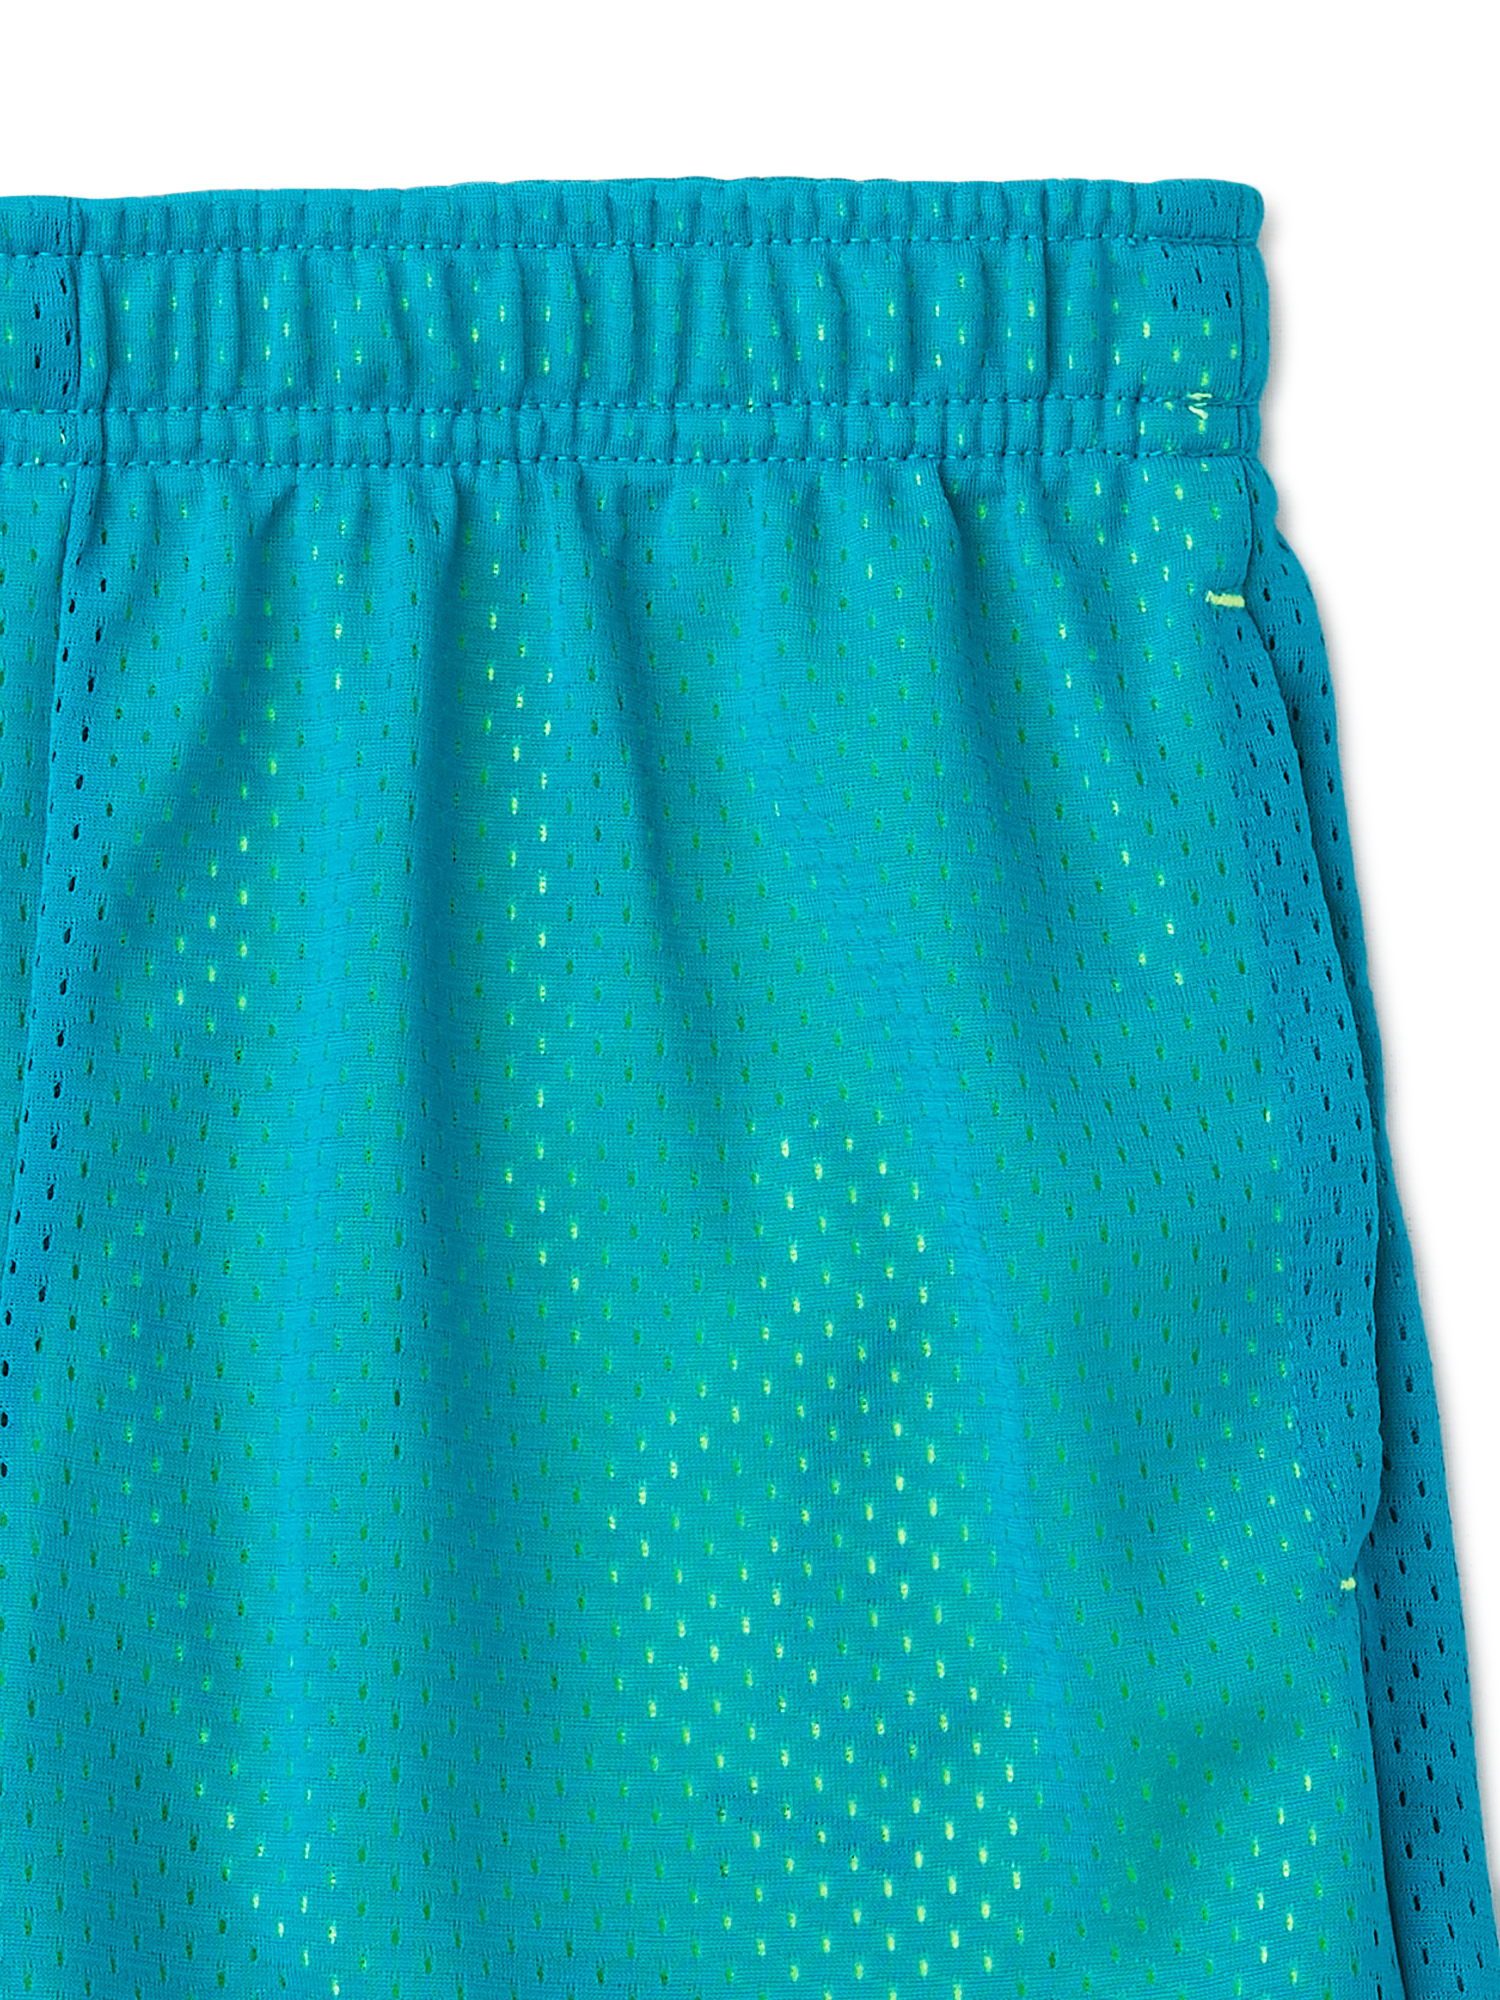 Athletic Works Boys Mesh Shorts, 3-Pack, Sizes 4-18 & Husky - image 3 of 4